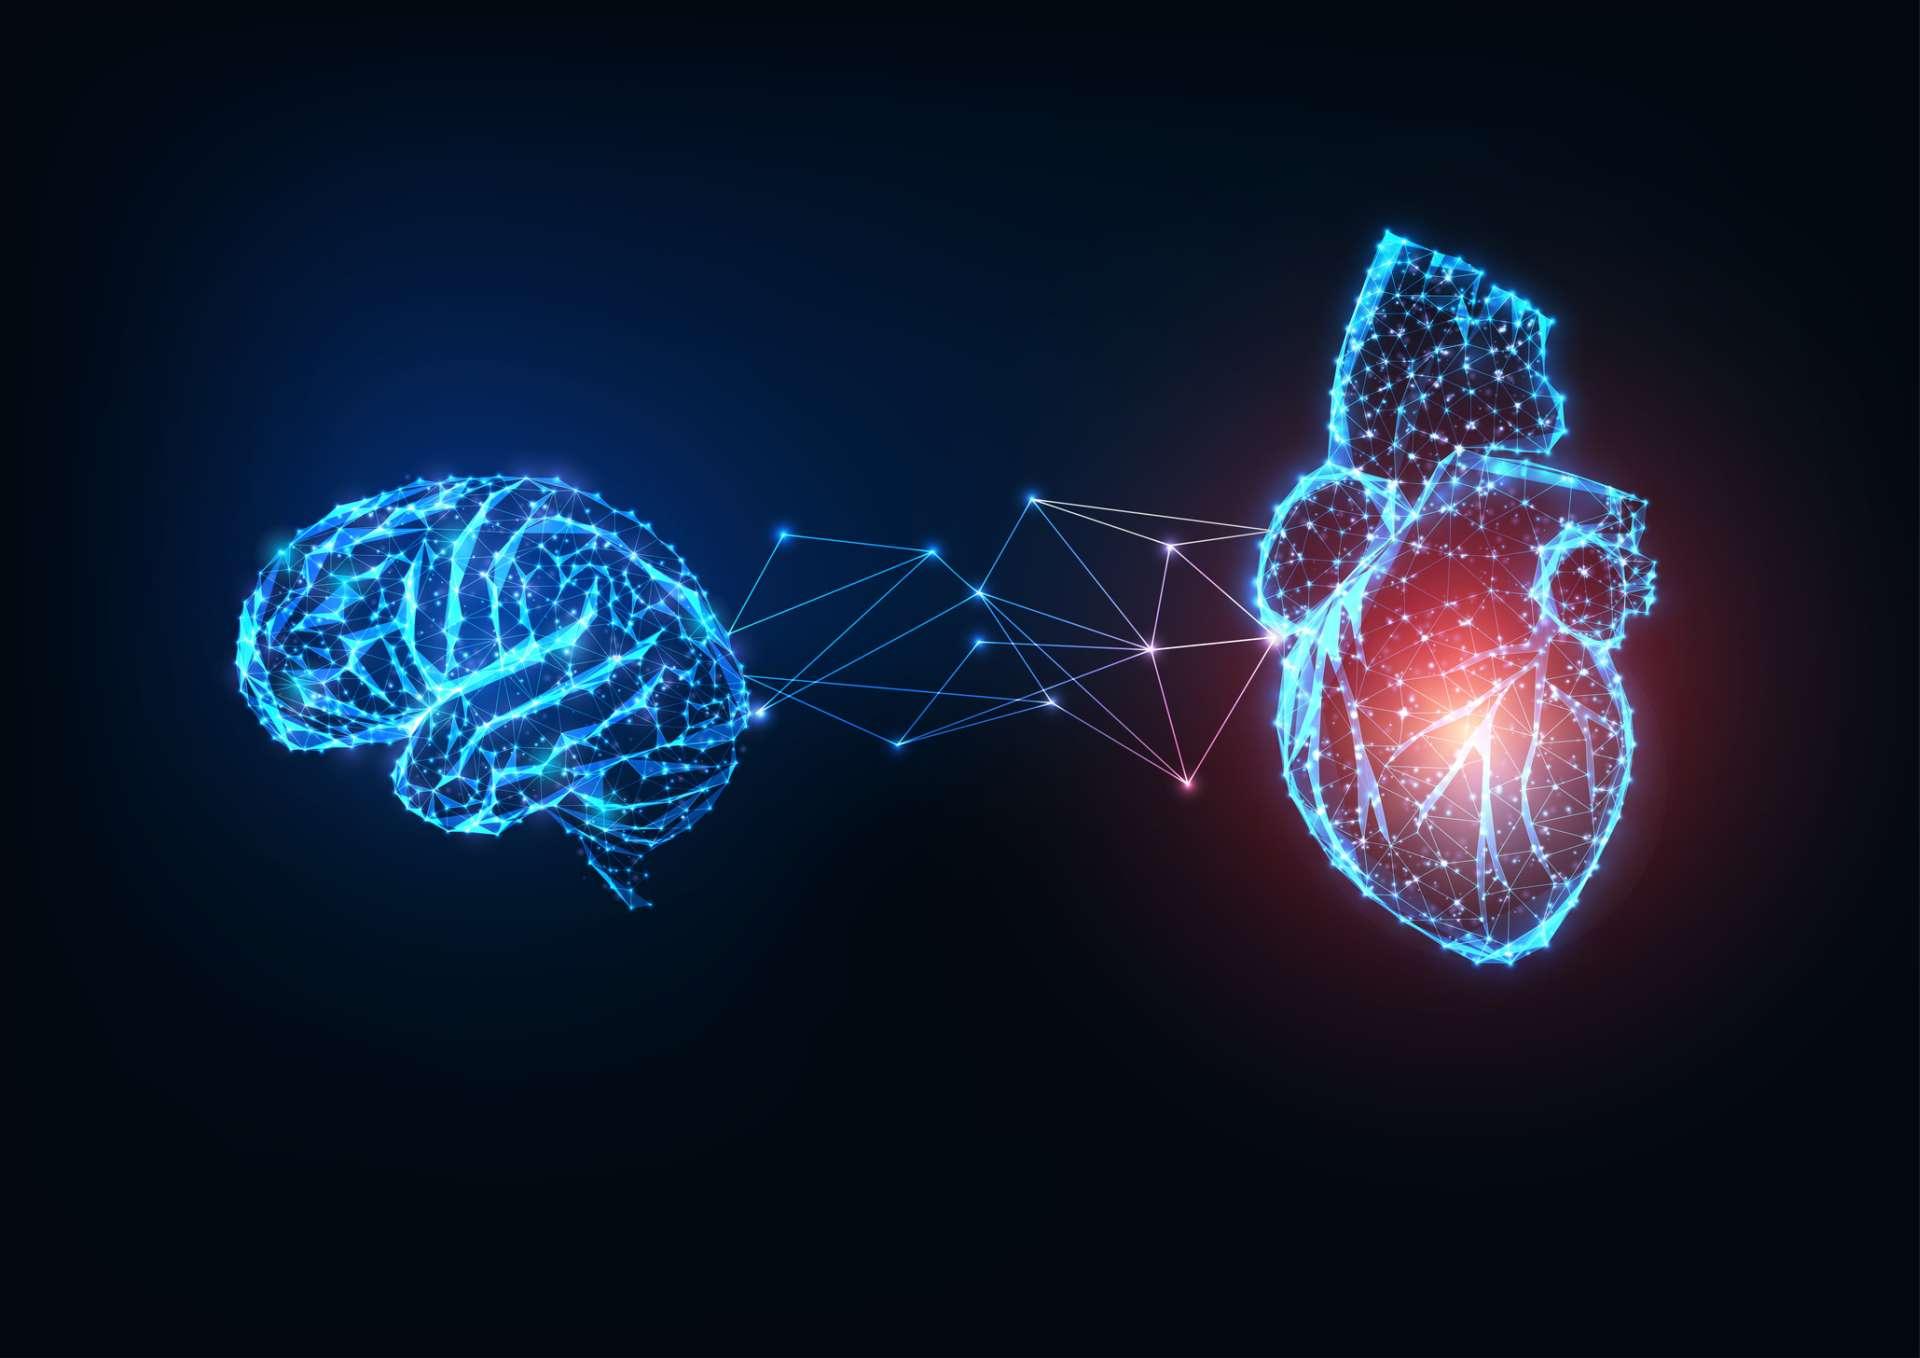 Futuristisch leuchtende niedrige polygonale verbundene menschliche Organe Gehirn und Herz auf dunkelblauem Hintergrund.